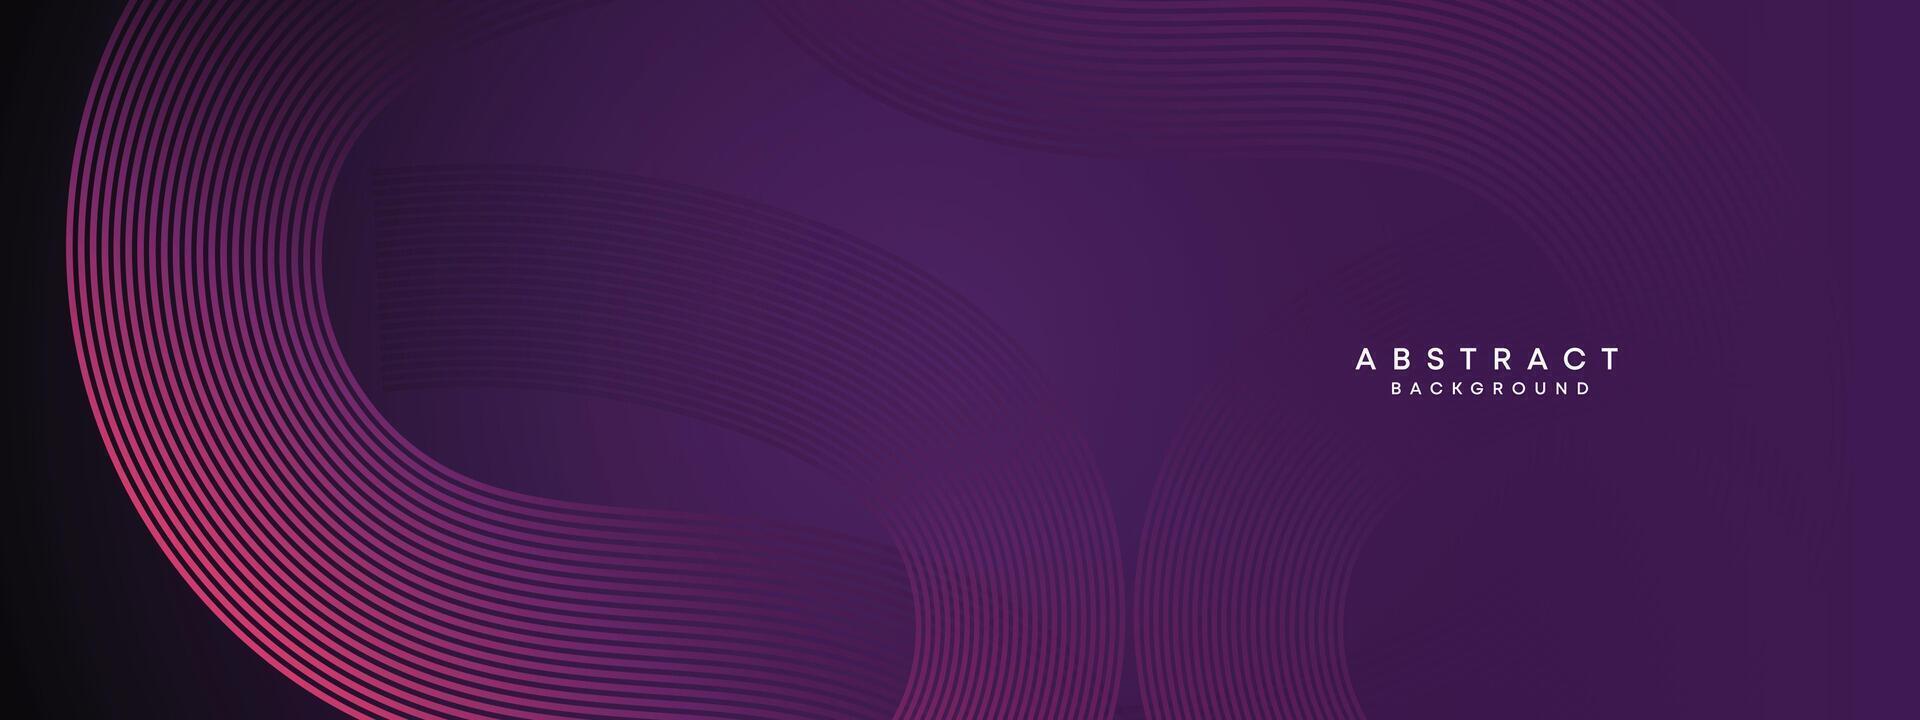 abstrakt dunkel lila und Rosa winken Kreise Linien Technologie Hintergrund. Gradient mit glühend Linien glänzend geometrisch gestalten und Diagonale, zum Broschüre, Abdeckung, Poster, Banner, Webseite, Header vektor